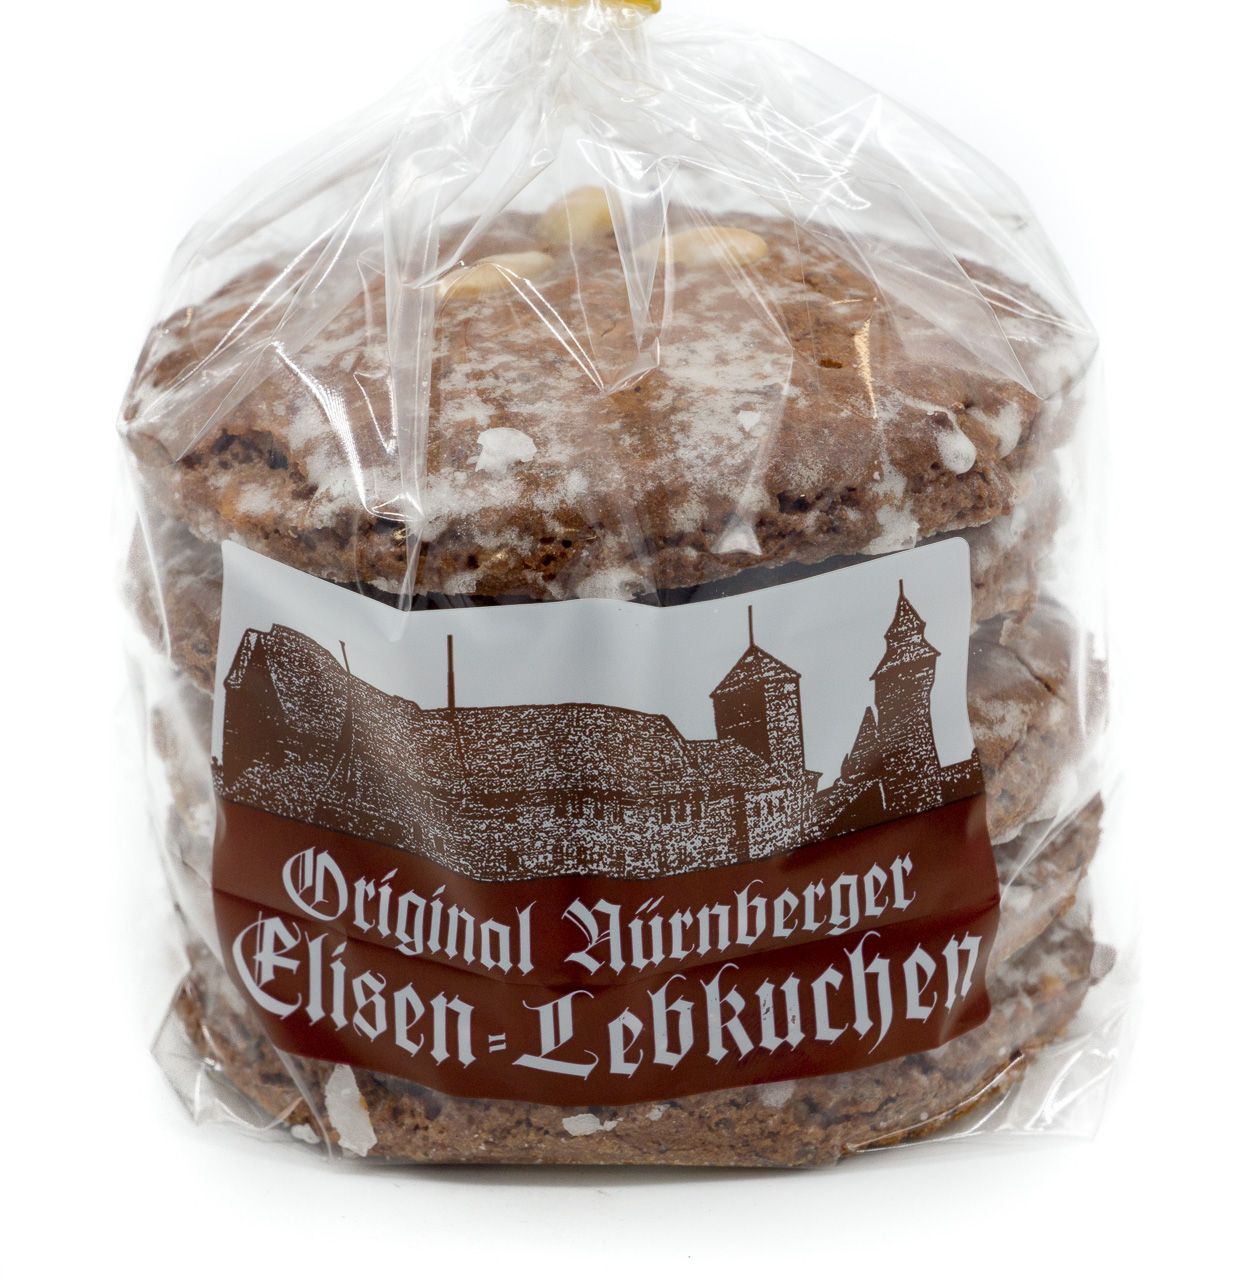 Original Nürnberger Elisen-Lebkuchen "glasiert"